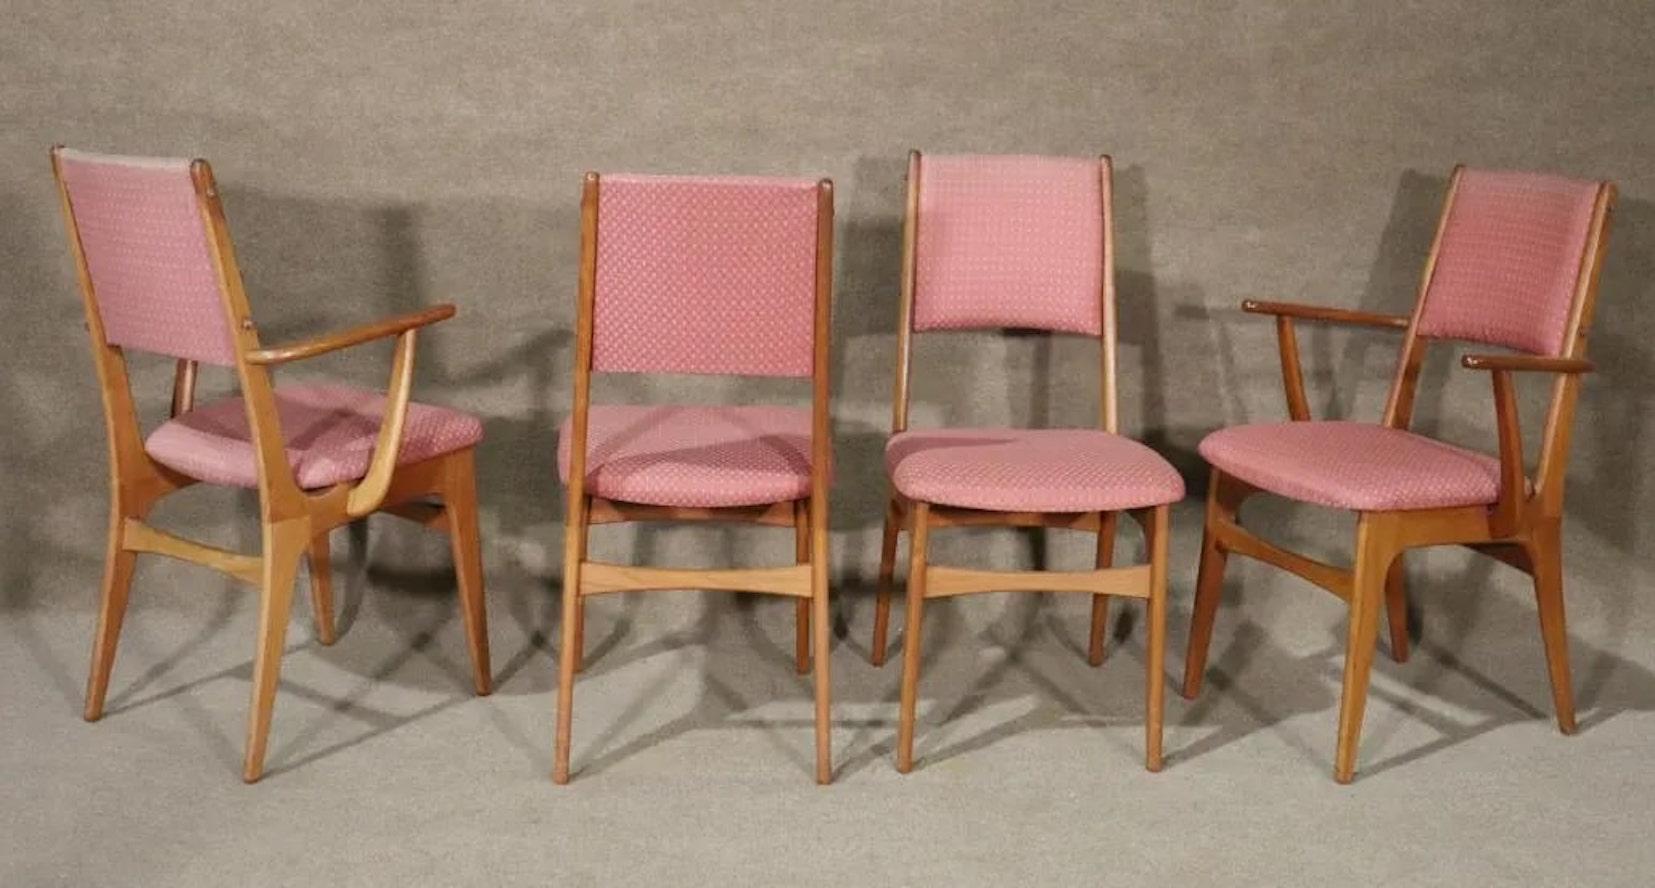 Satz von acht Esszimmerstühlen mit Rahmen aus Teakholz. Dänisches Fabrikat aus den 1960er Jahren mit einfachem und schönem Design. Zwei Sessel und sechs Beistellstühle.
Die Beistellstühle messen 36